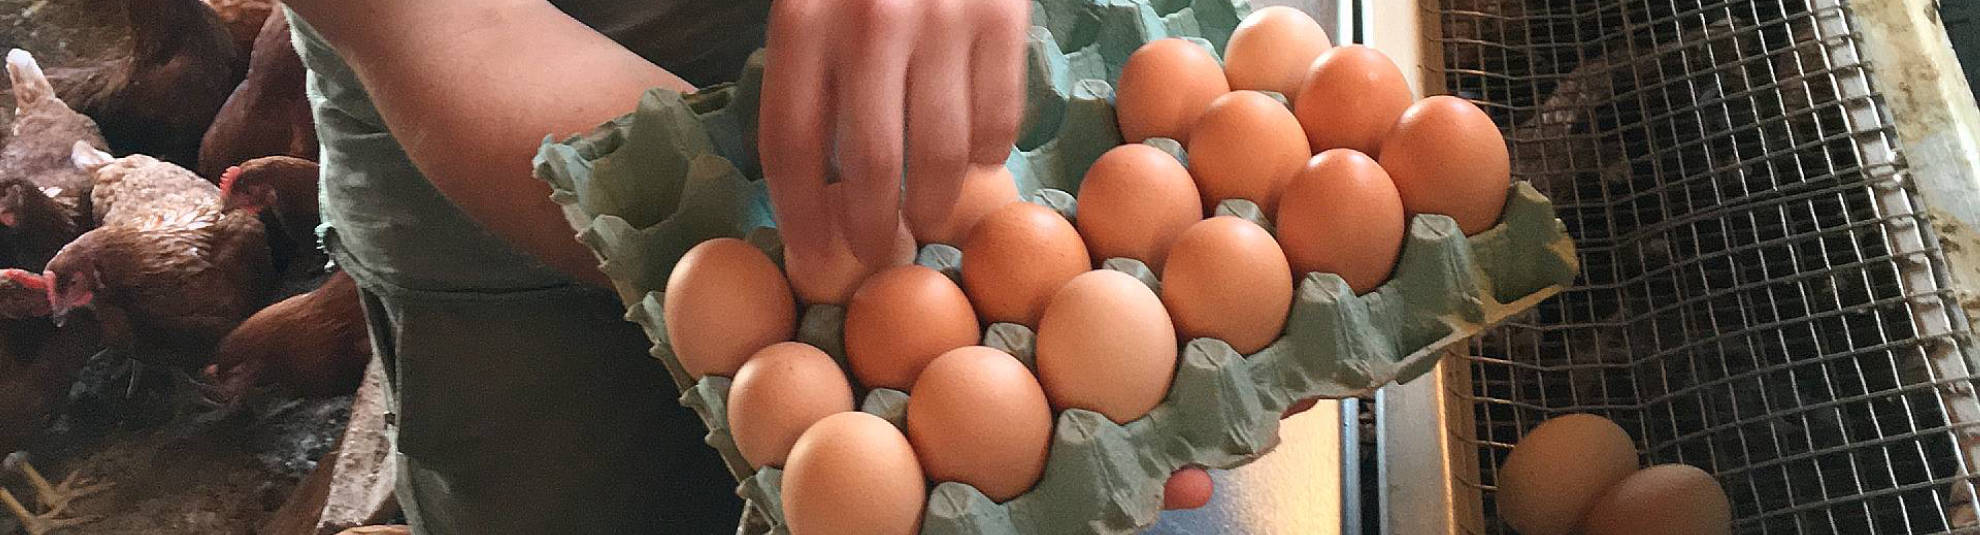 Τα χωριάτικα αυγά είναι υγιεινά